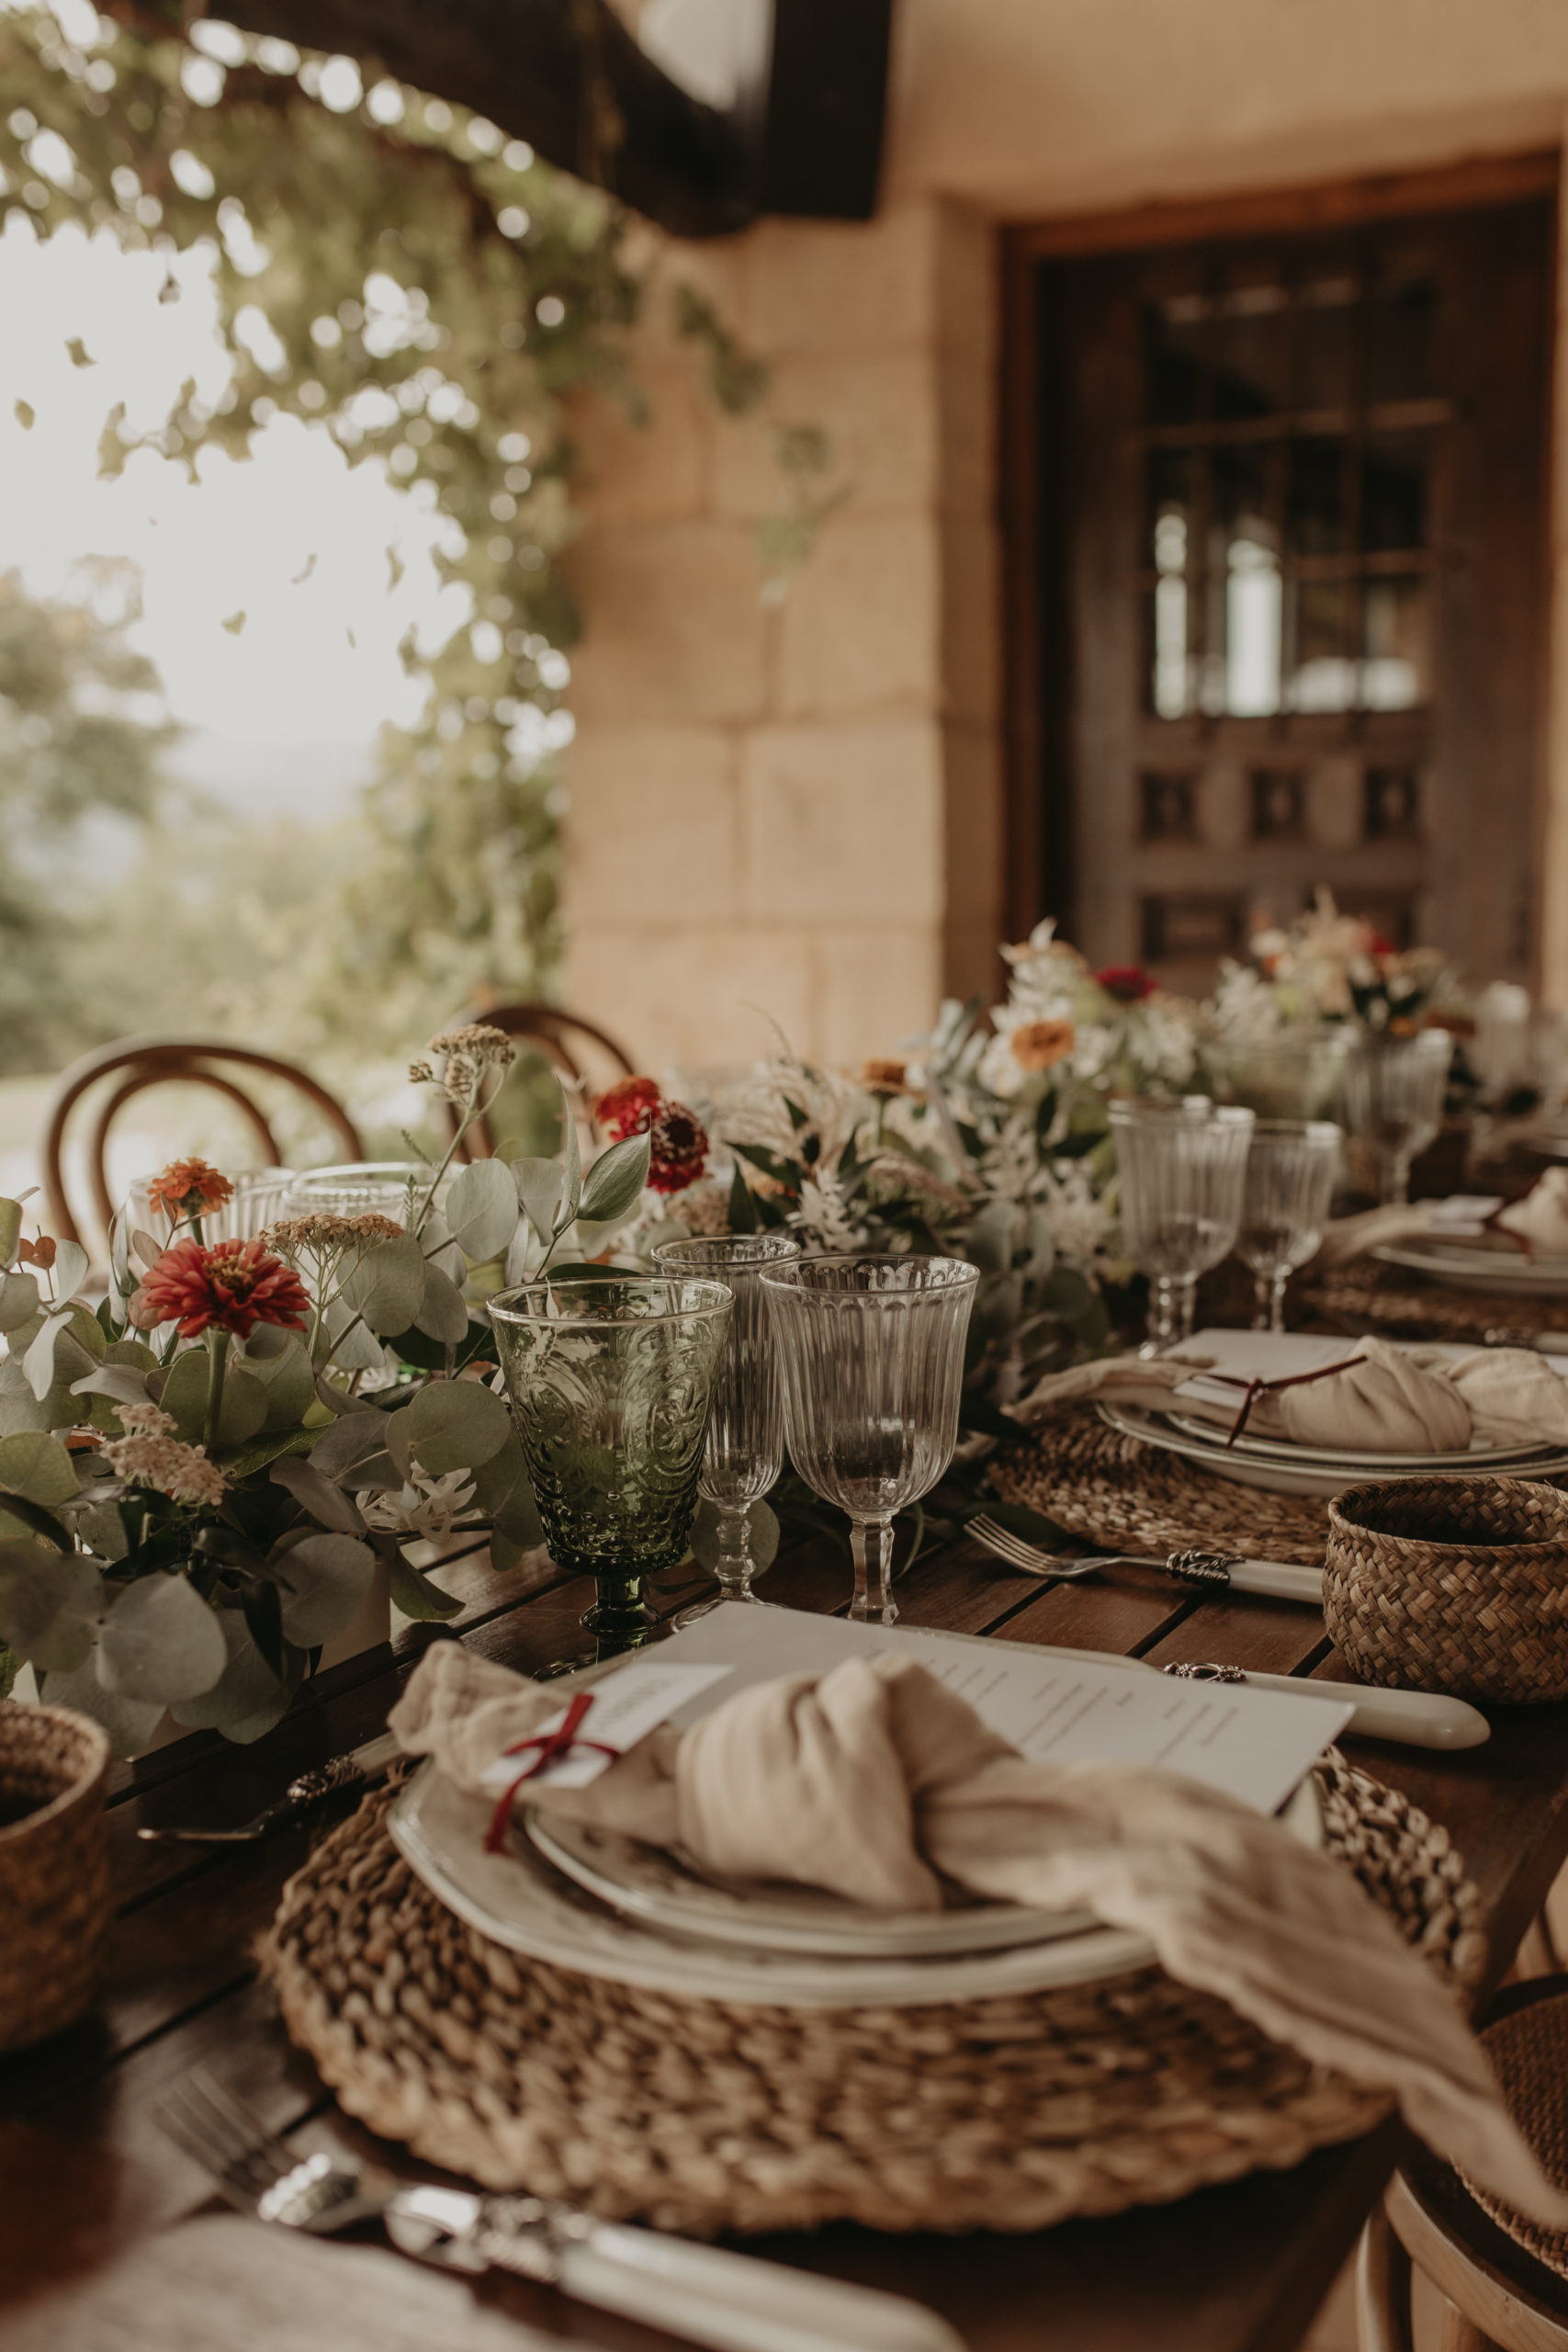 Bajoplatos, servilletas, copas, cubertería y decoración floral especial para un banquete nupcial